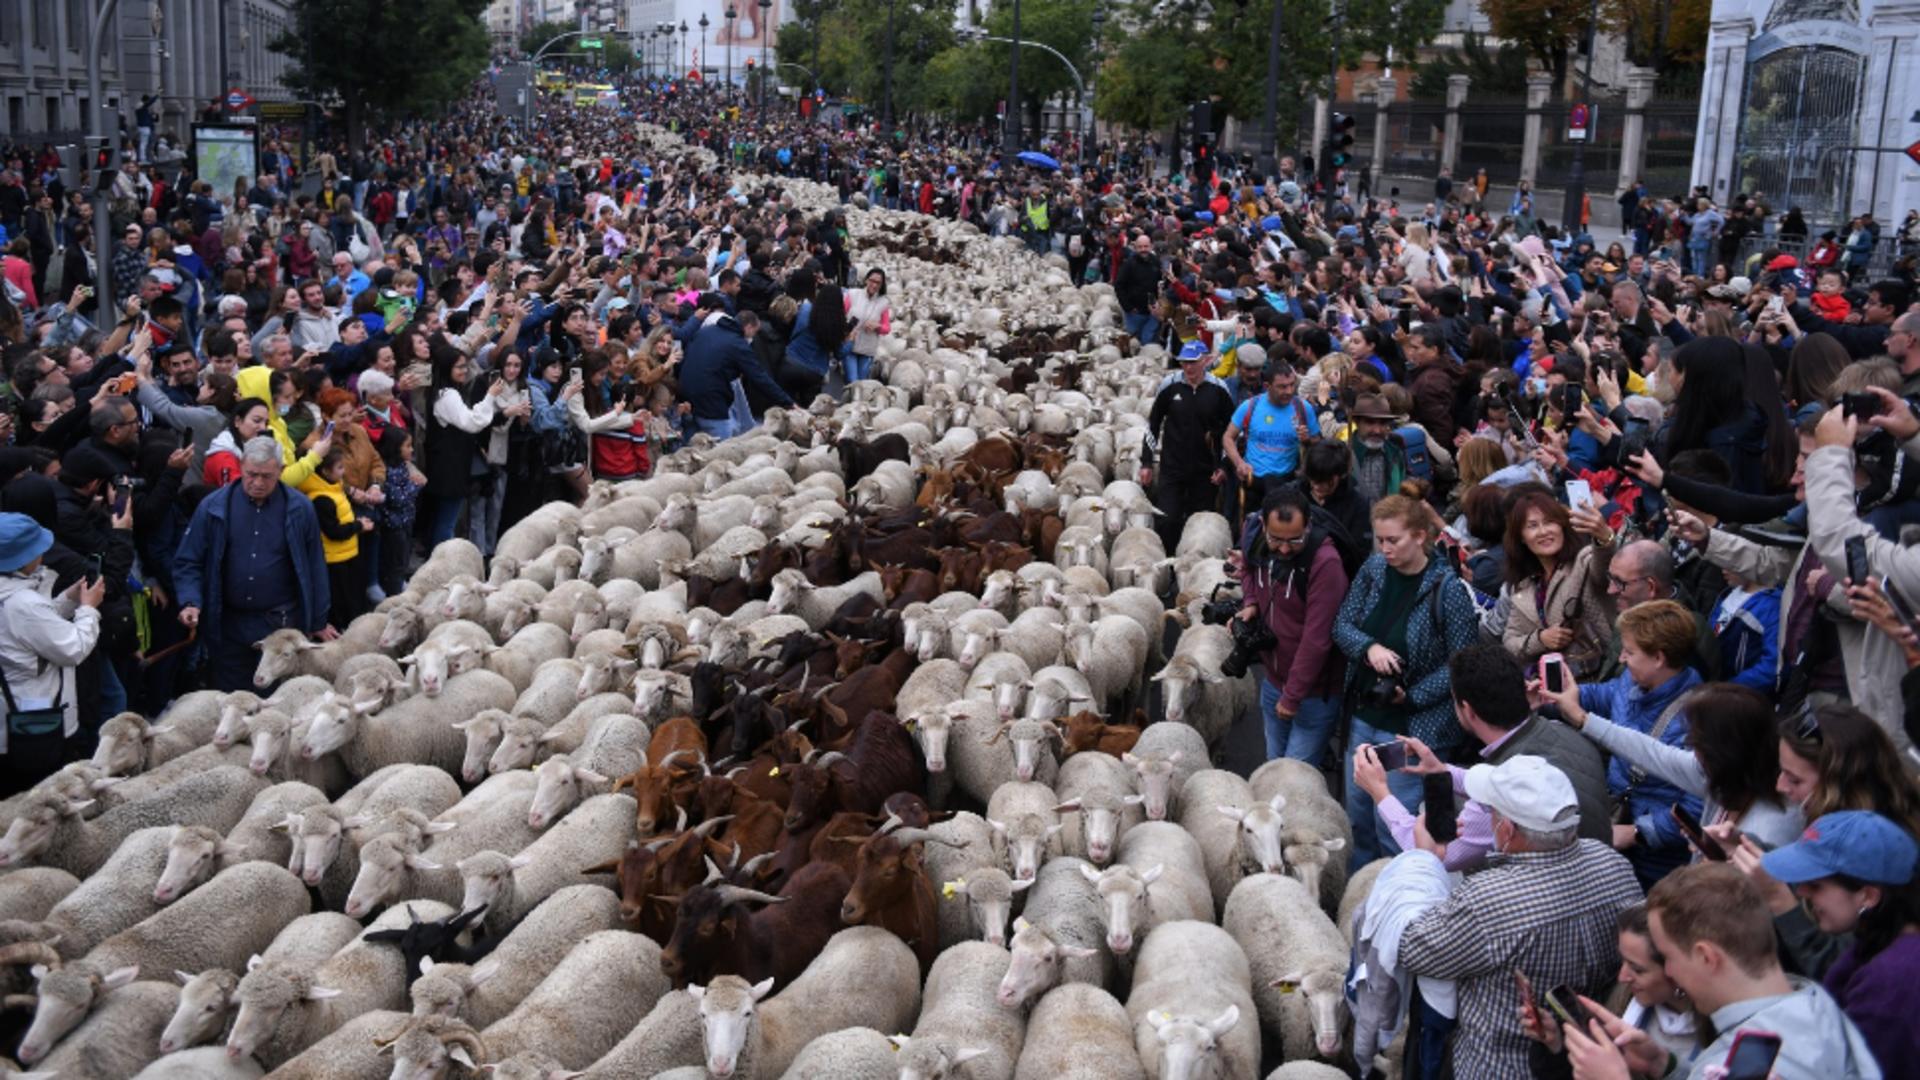 O fiesta mai specială, pe străzile Madridului. Foto/Profimedia